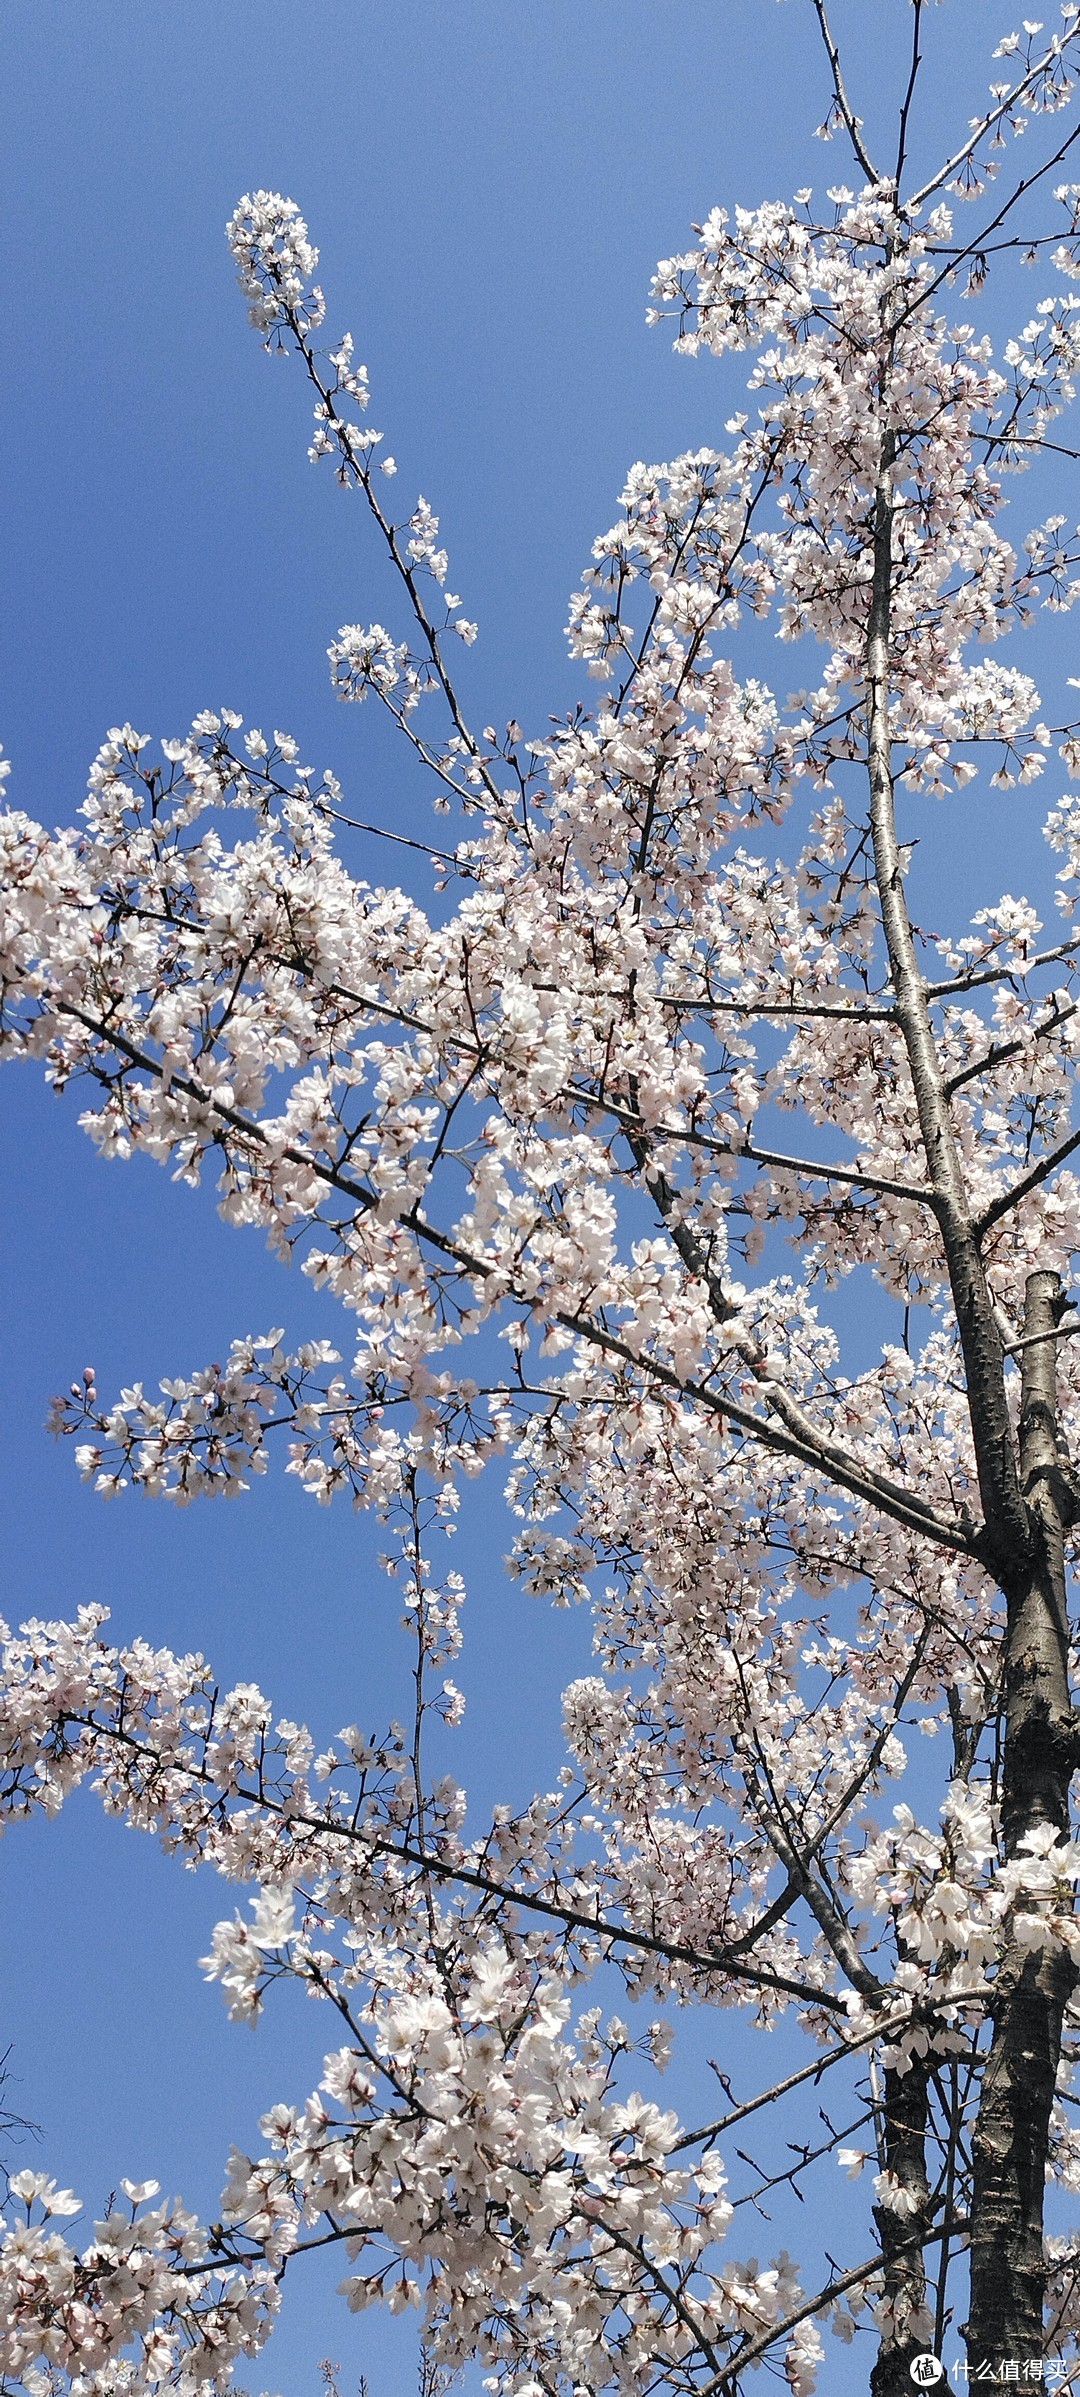 故乡的🌸樱花🌸开了，风中弥漫着浪漫的气息扑面而来，春暖花开的季节，一起来欣赏樱花吧。